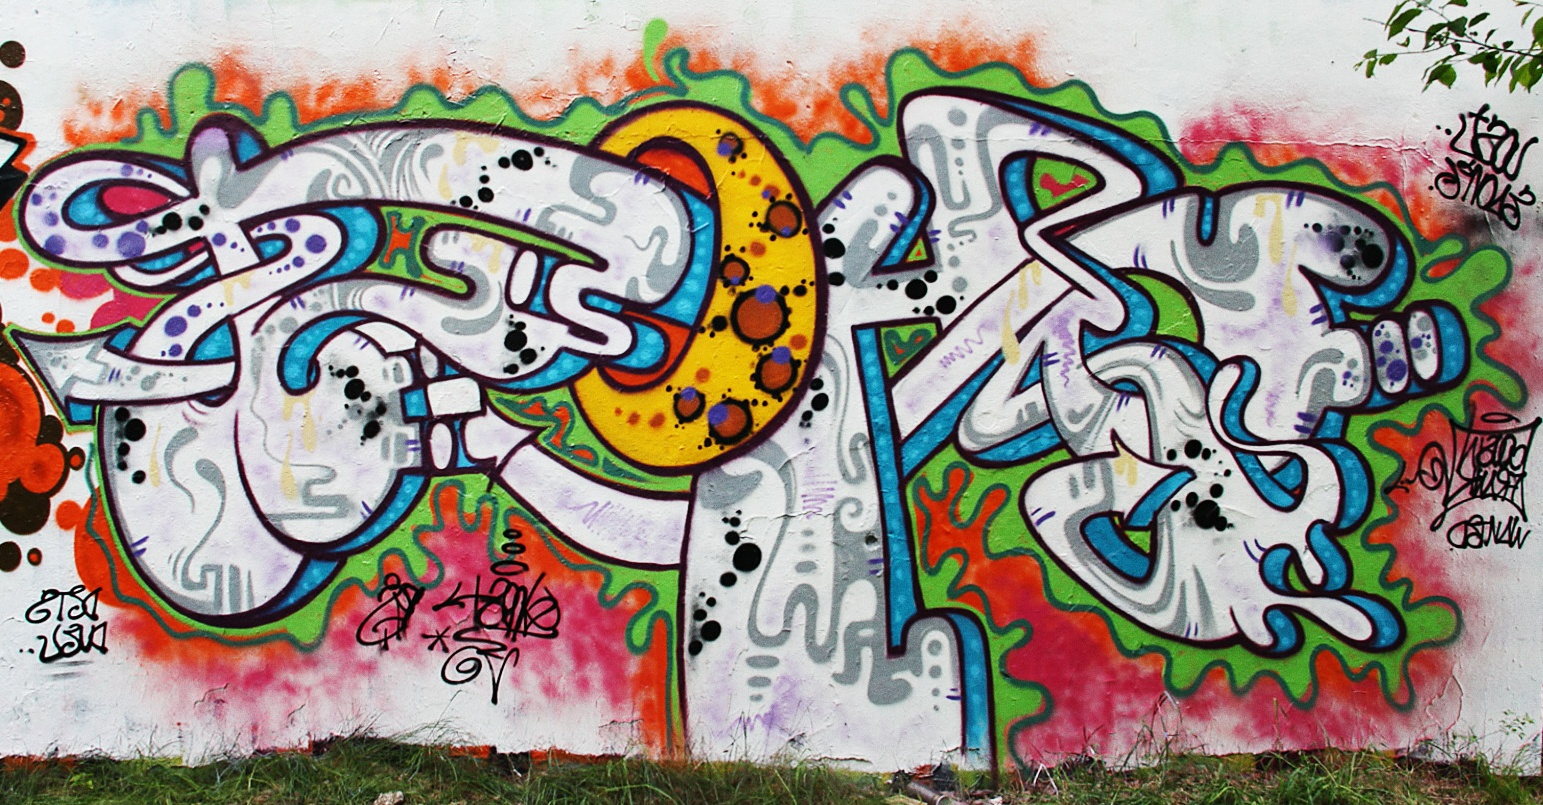 Gambar Graffiti Keren Banget Kumpulan Gambar Graffiti Keren